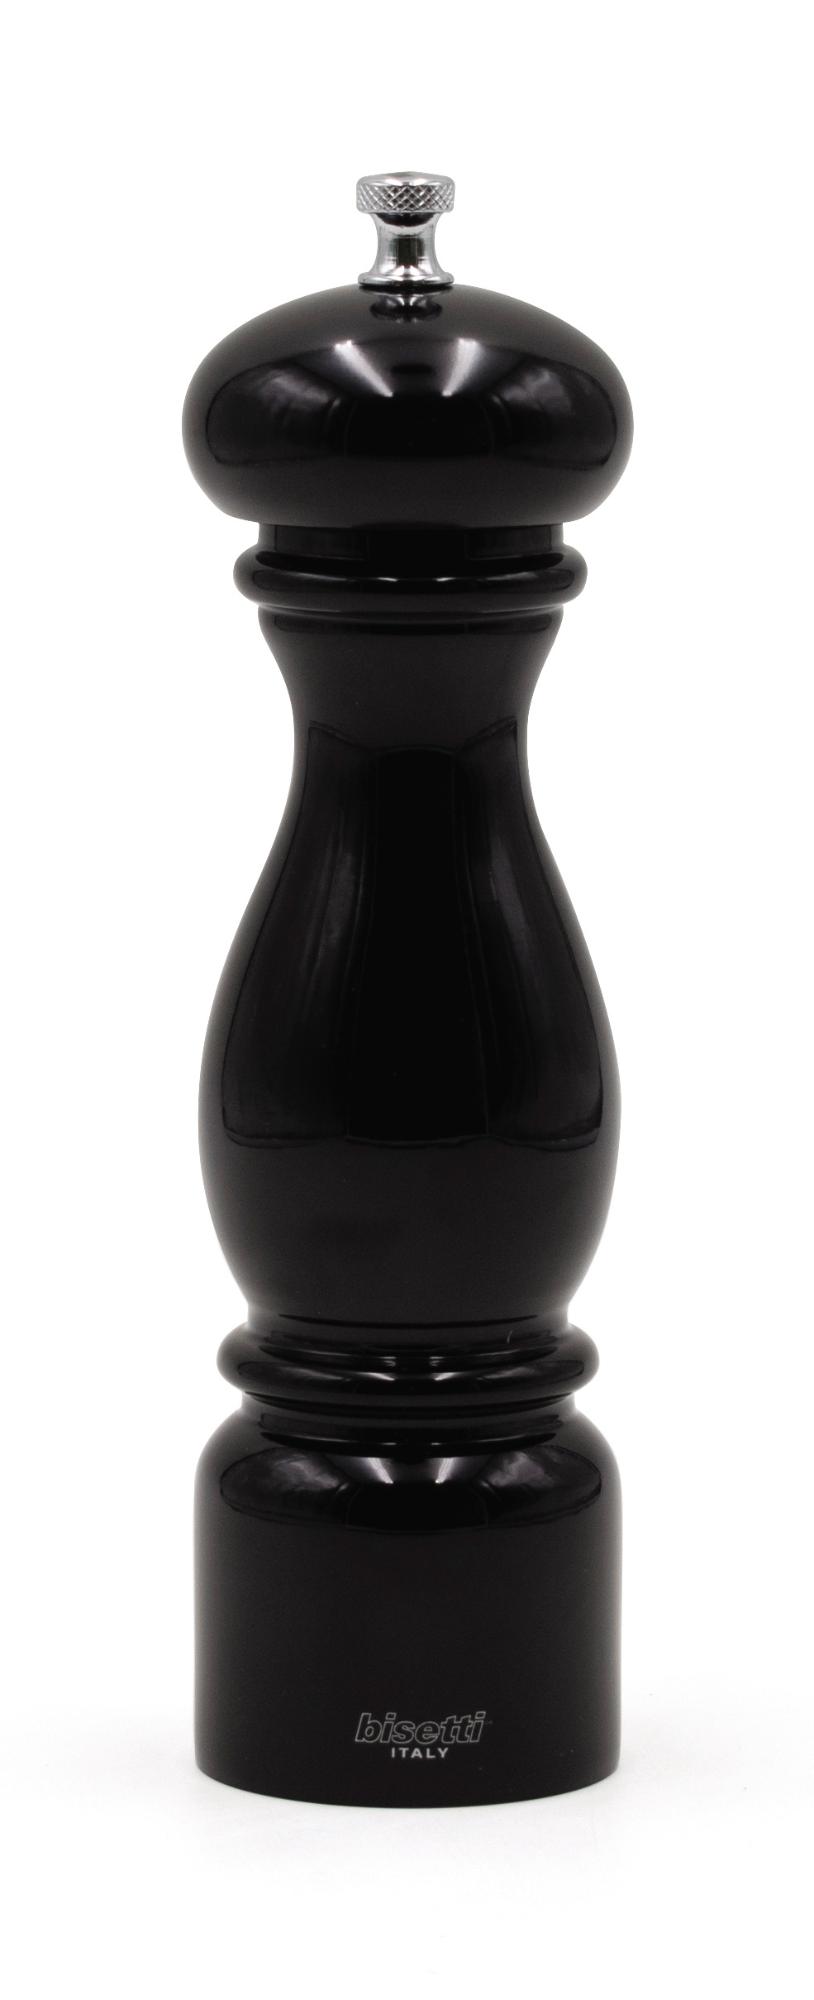 Firenze pepper mill, black, 220mm